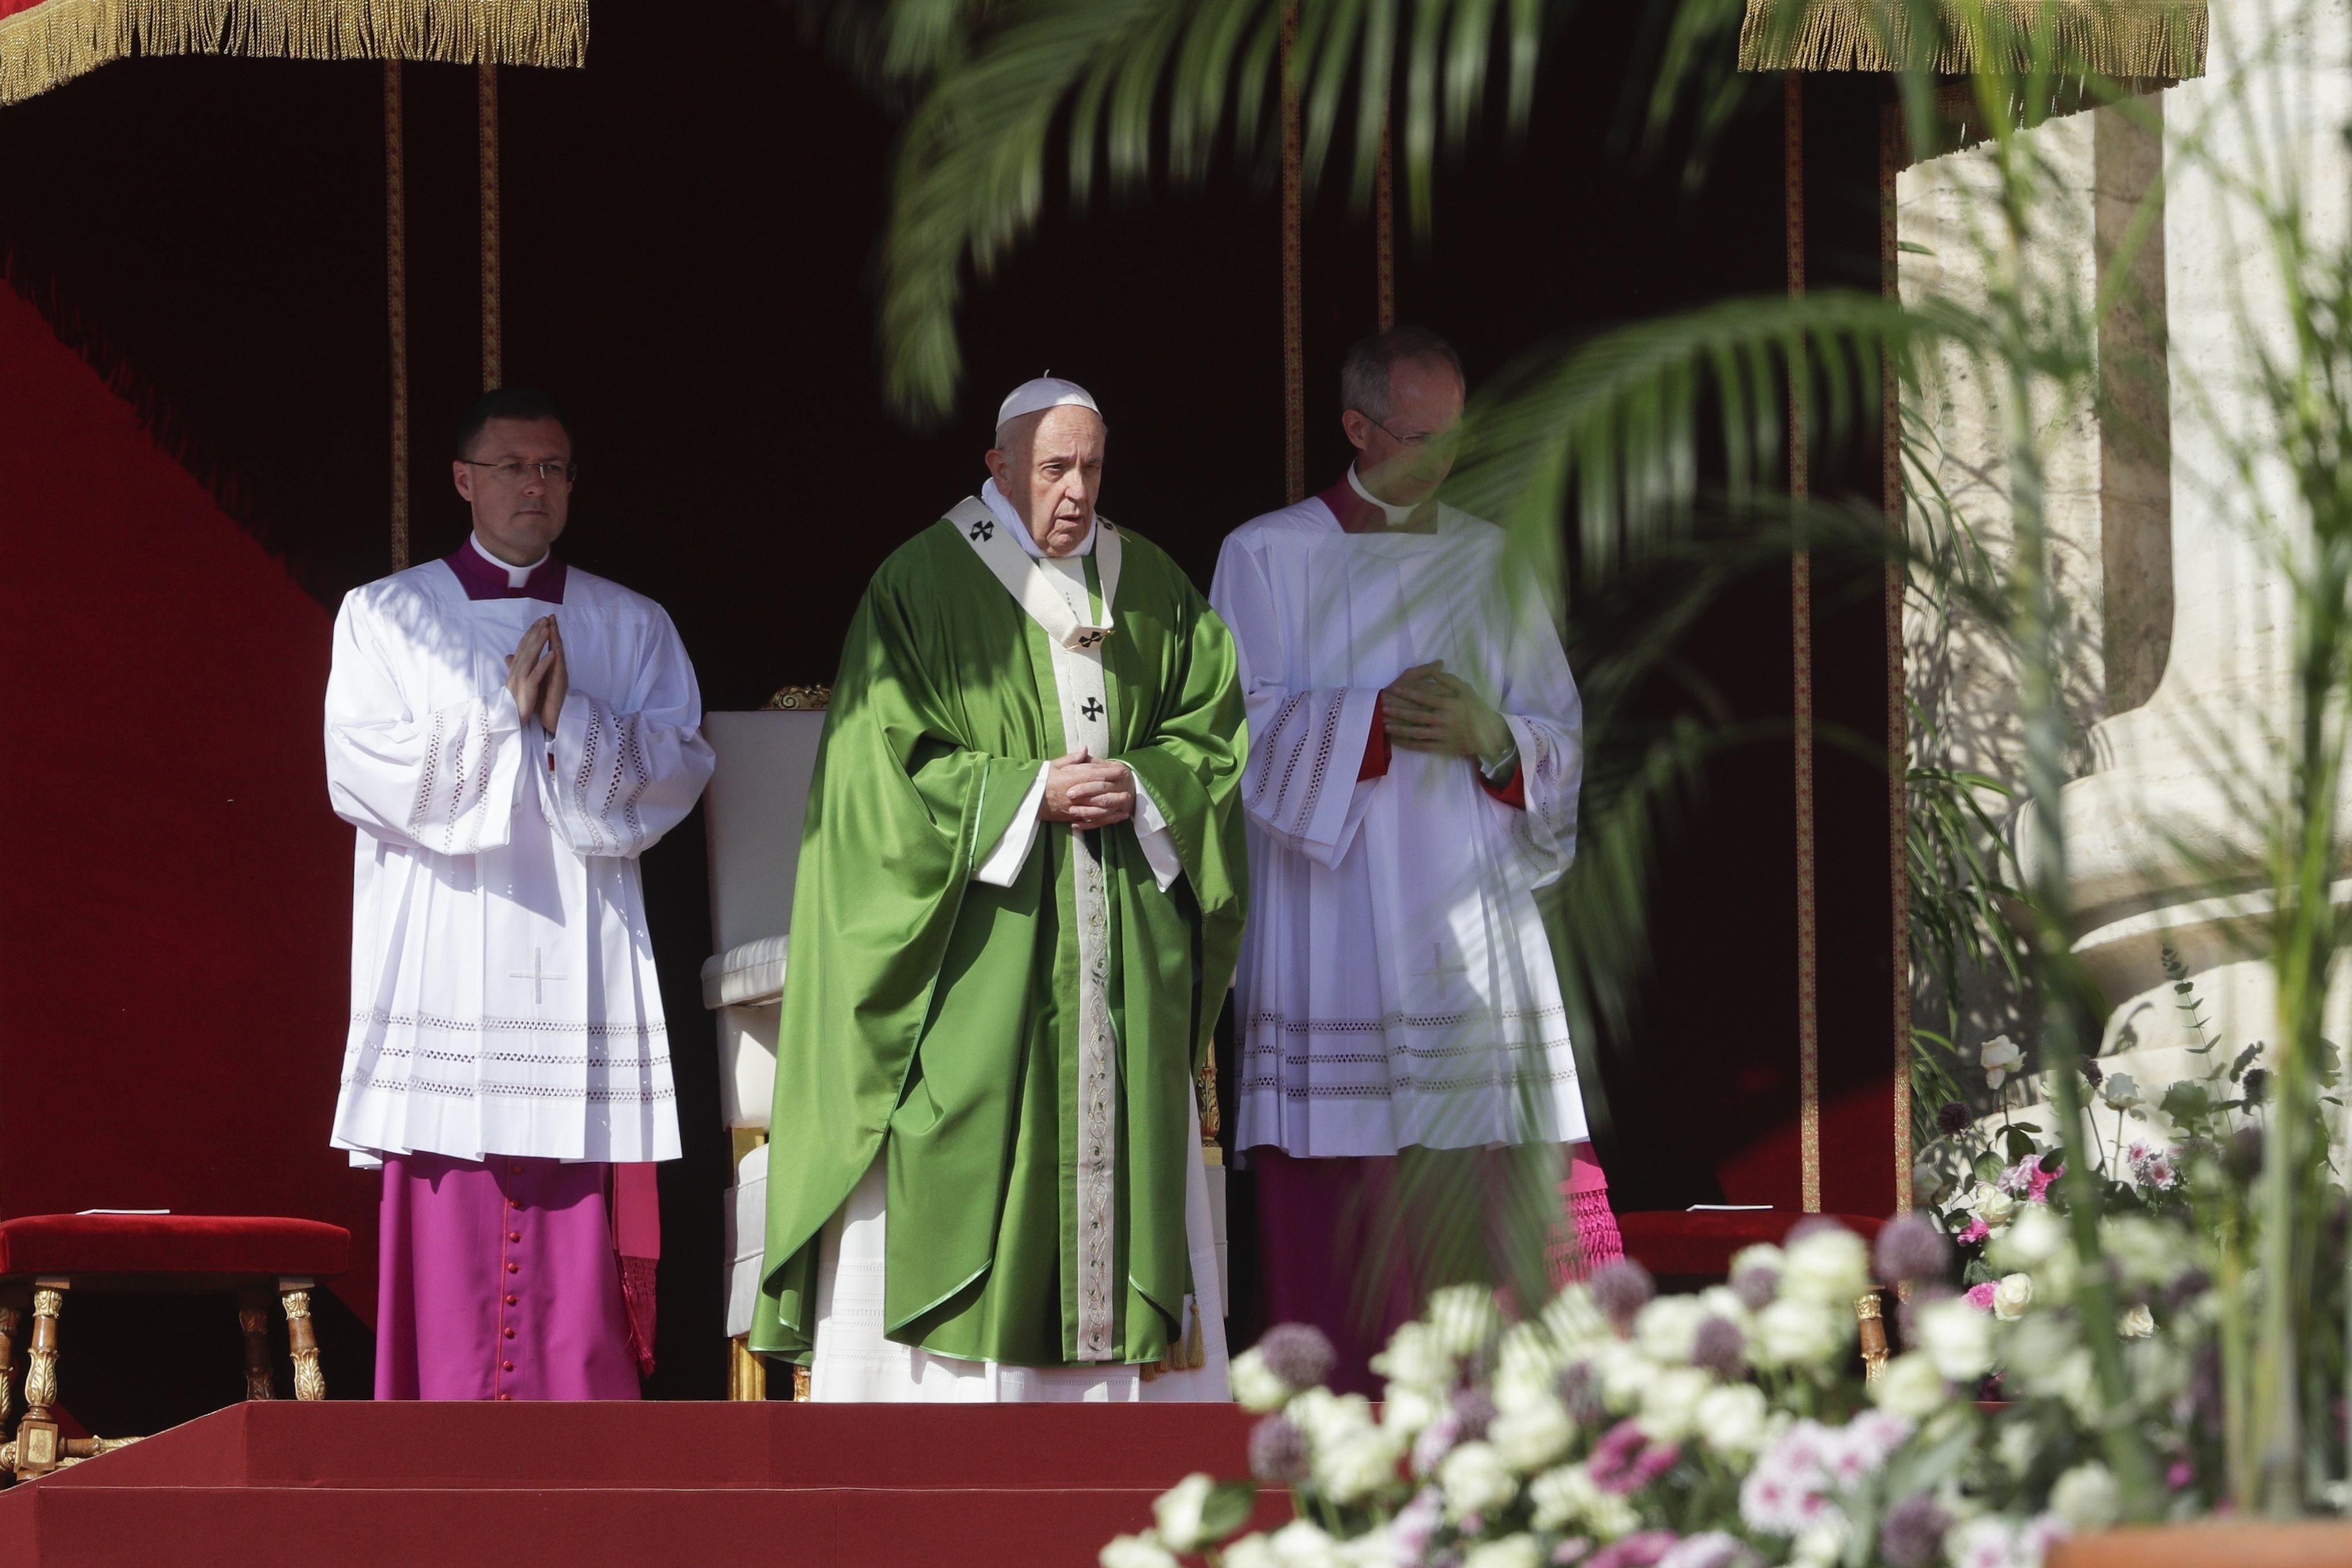 Pápež František celebruje omšu pri príležitosti Svetového dňa migrantov a utečencov na Námestí sv. Petra vo Vatikáne 